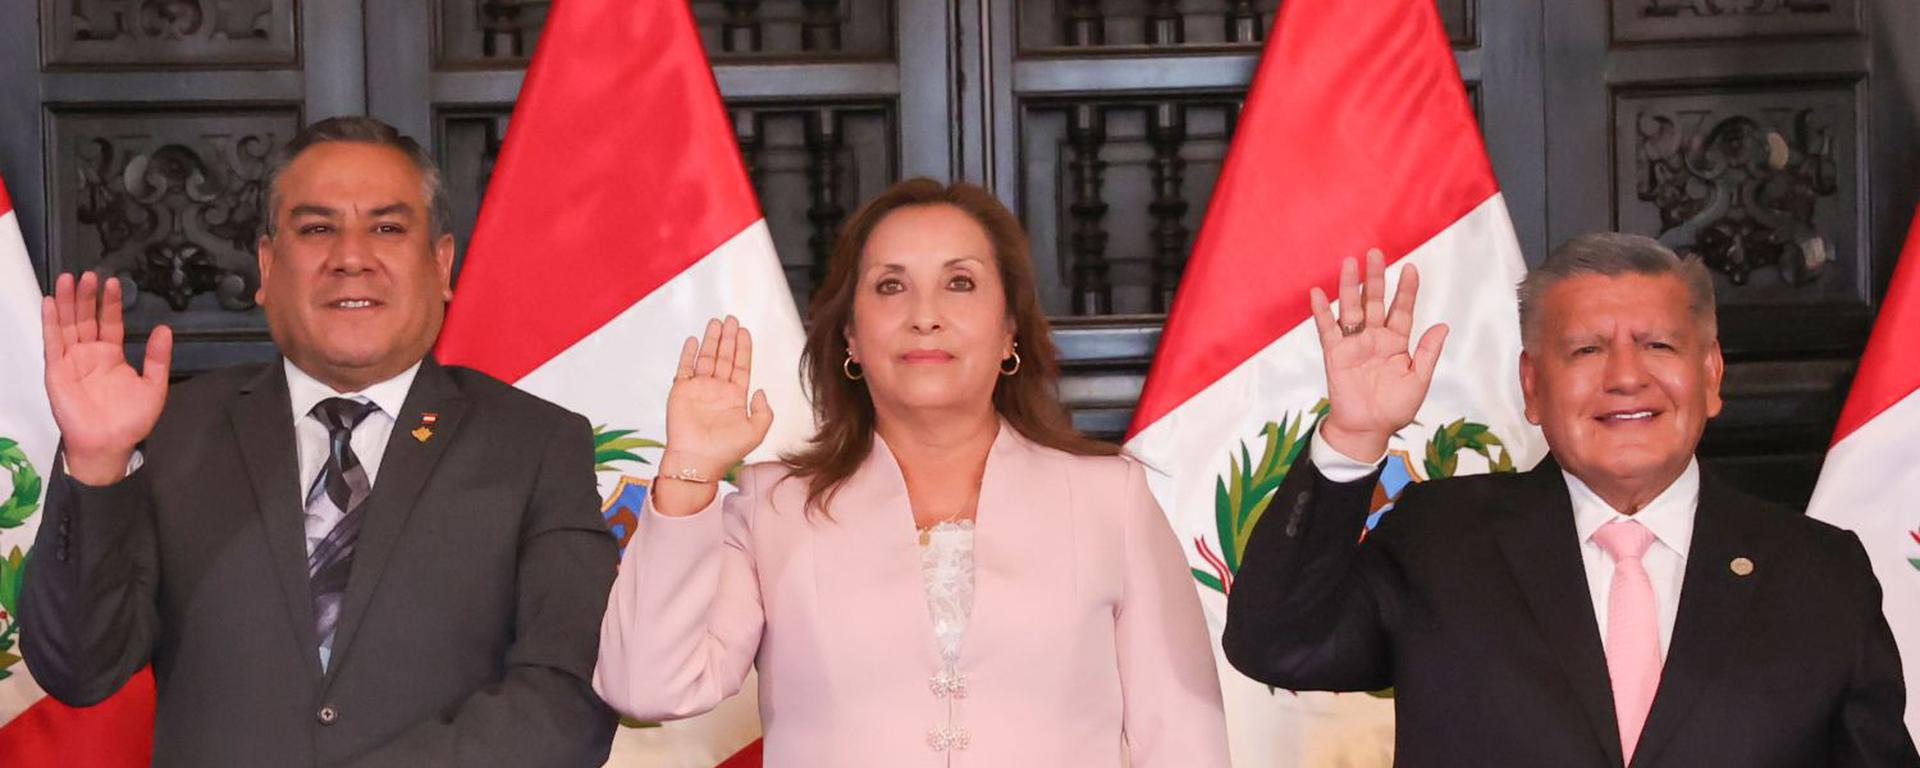 No es por ti Dina, es por el Perú: partidos dicen apoyar a Boluarte ‘por la gobernabilidad’. Crónica de Fernando Vivas